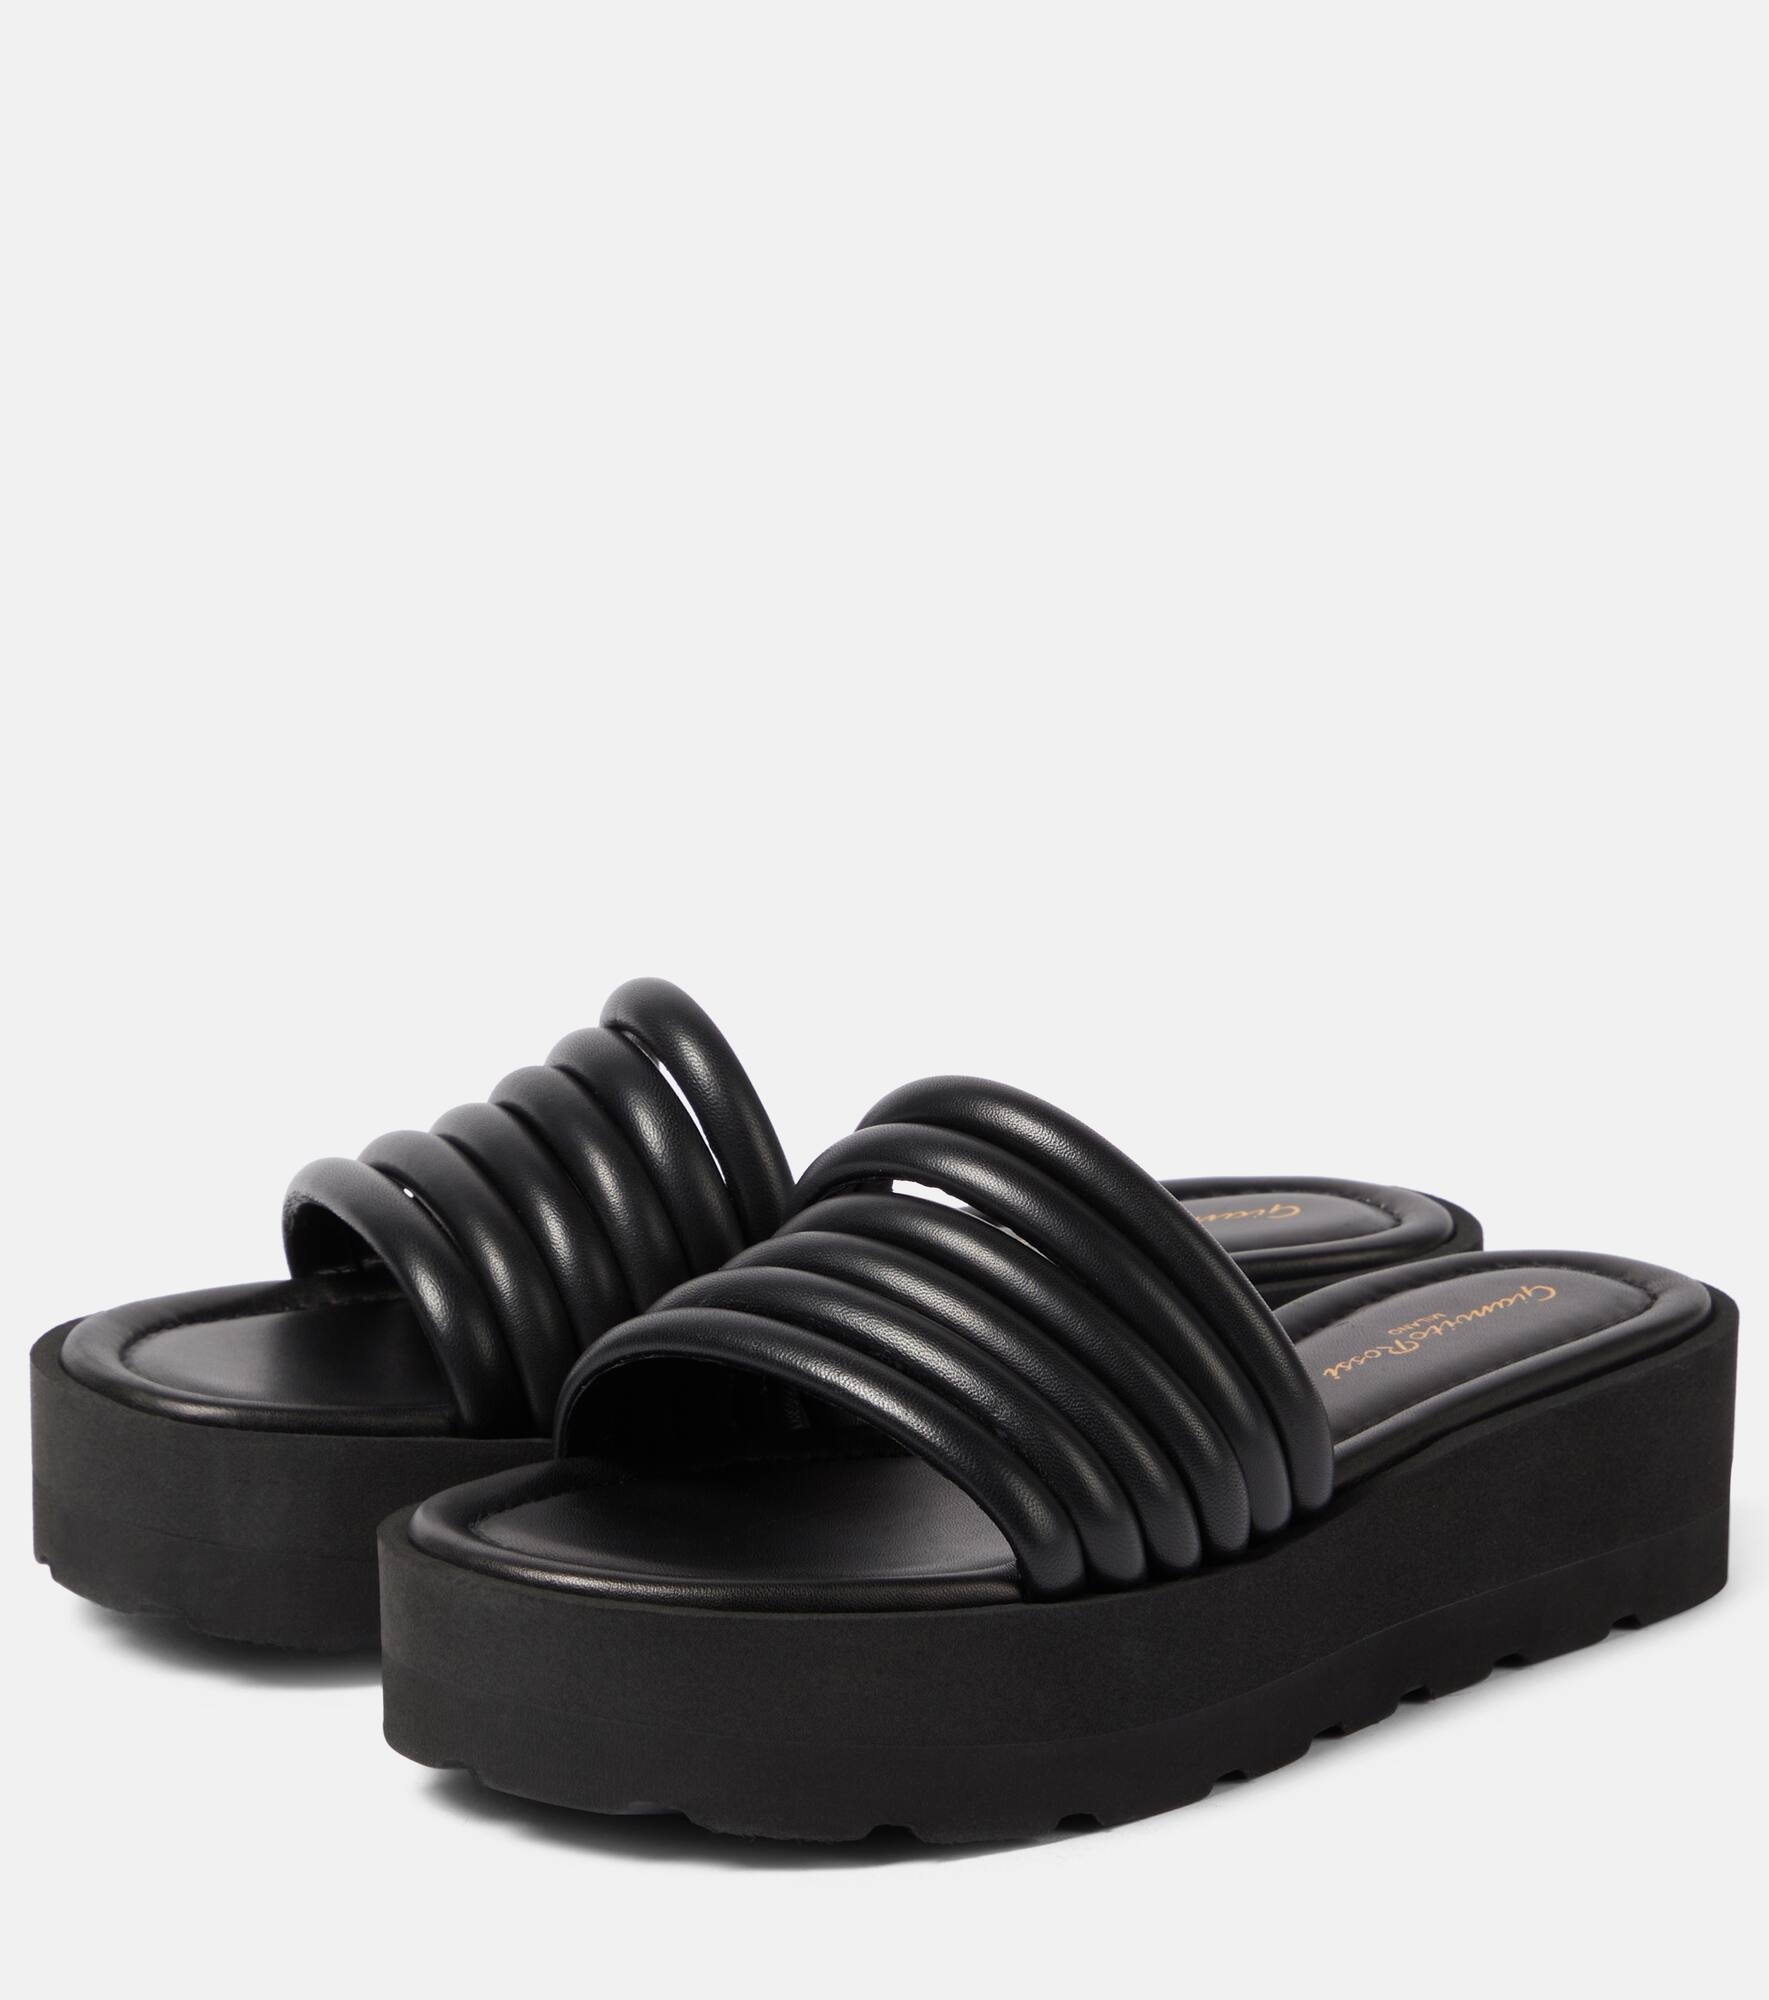 Leather platform sandals - 5